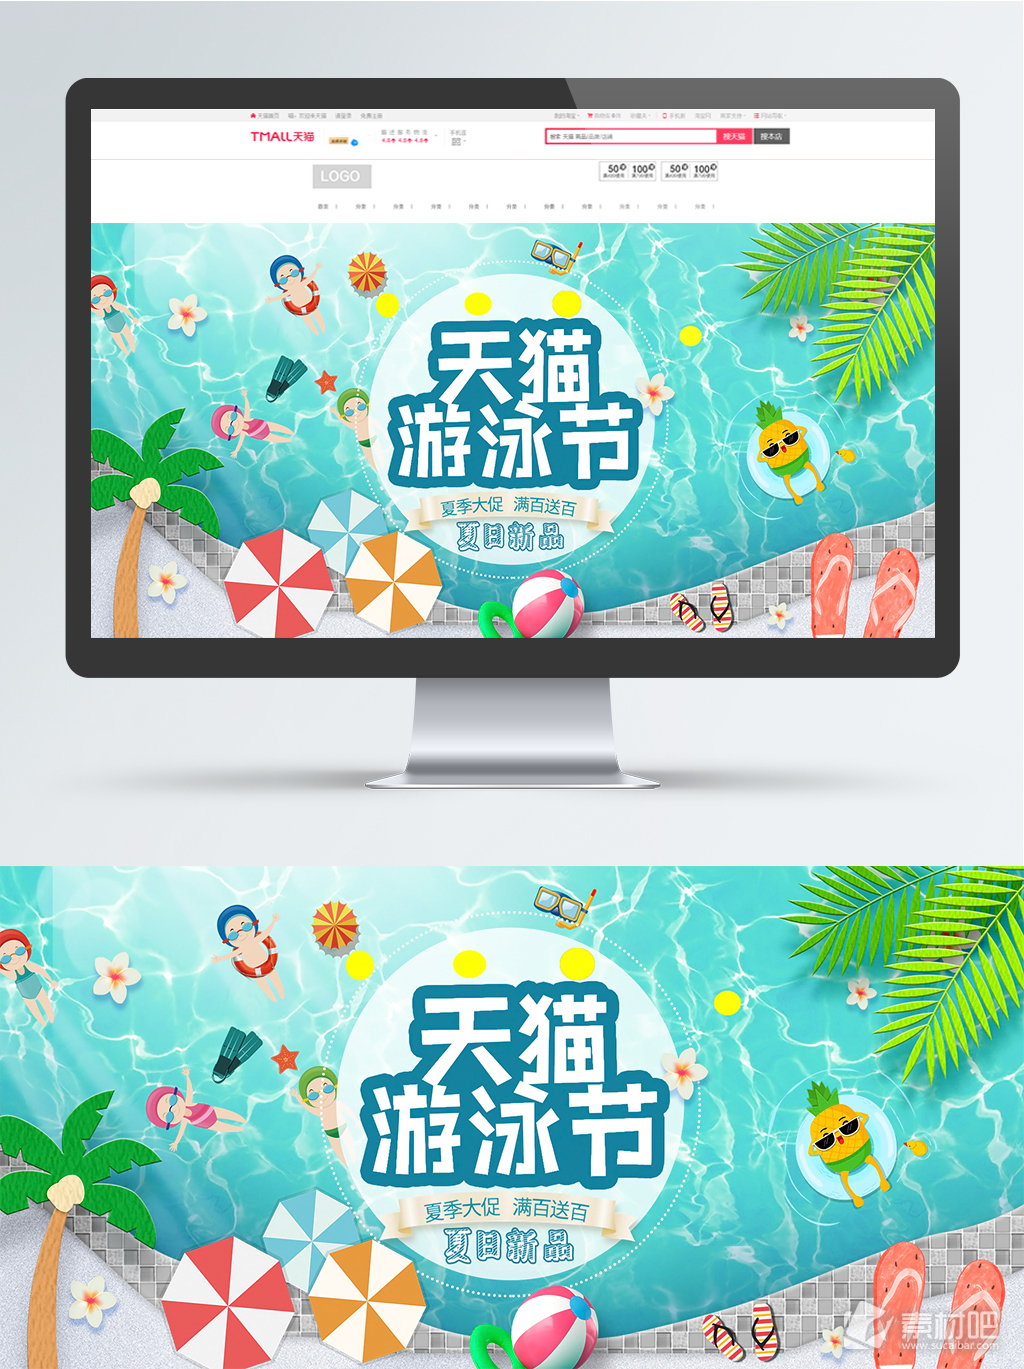 天猫游泳节活动促销海报banner